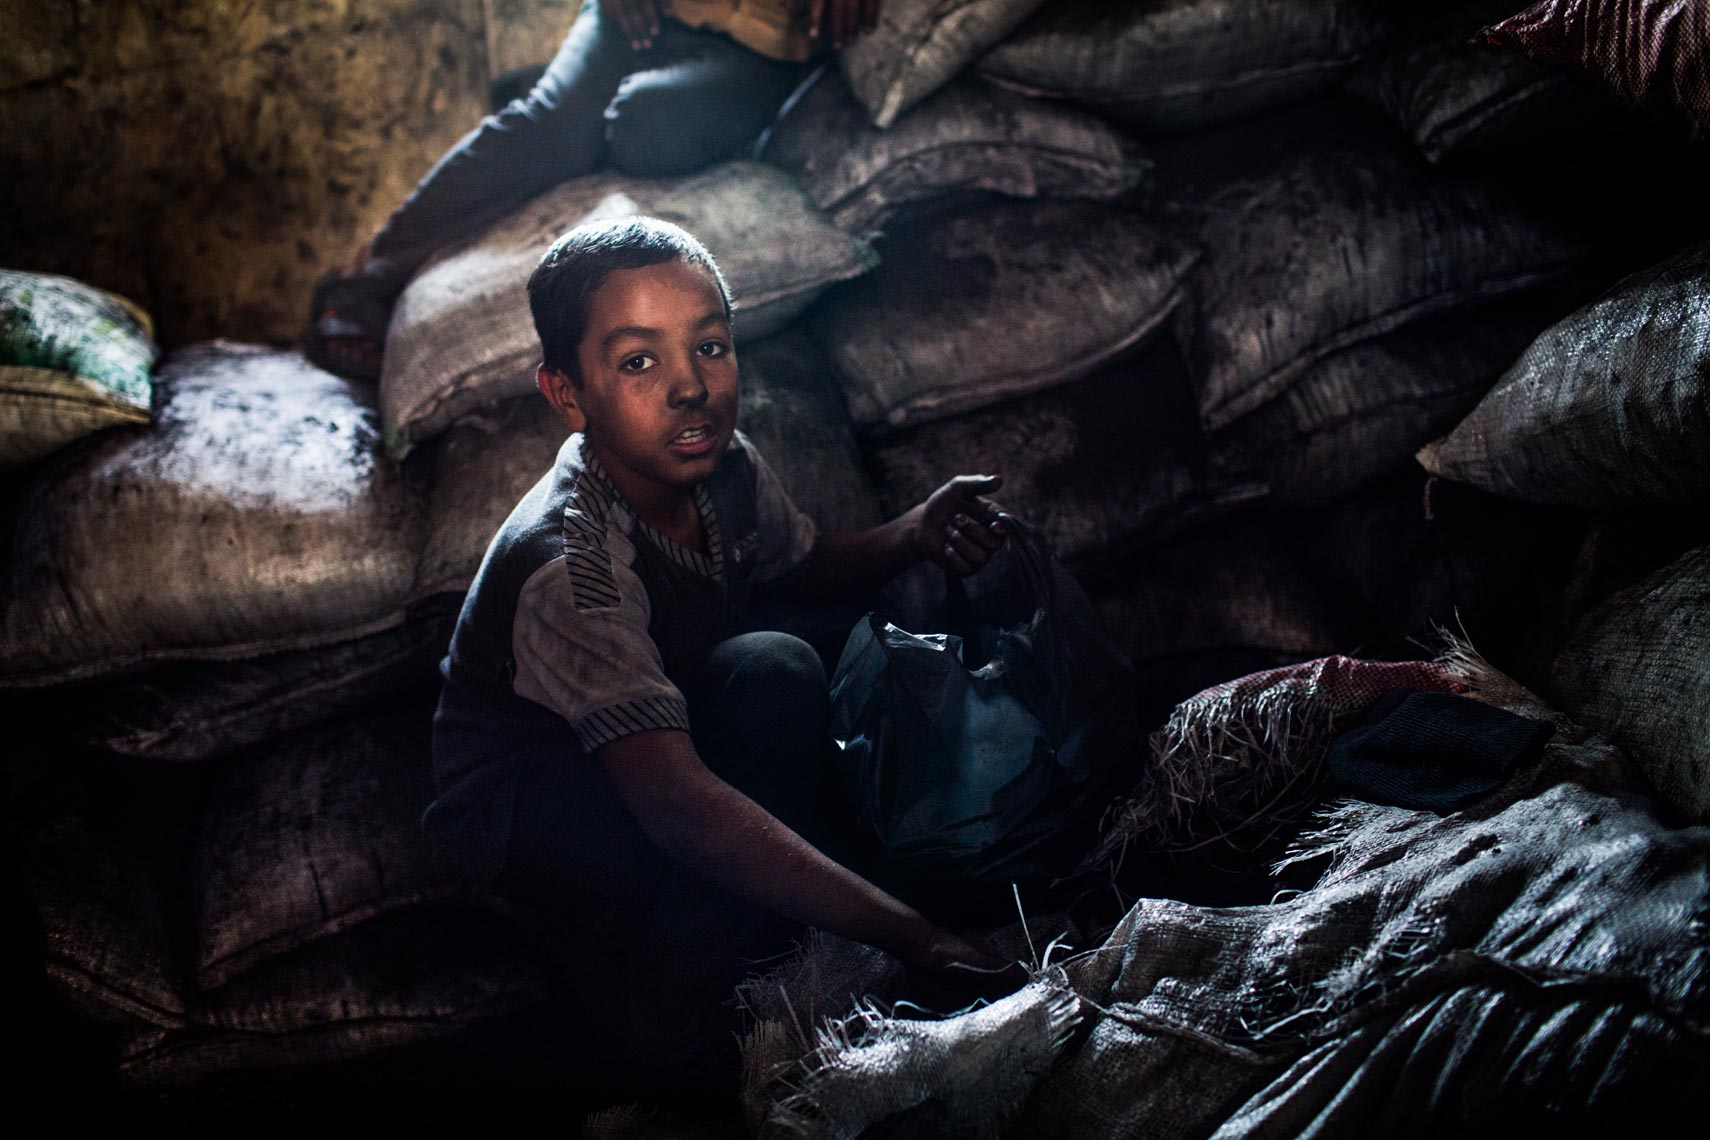 Syrian Refugee Child Labour